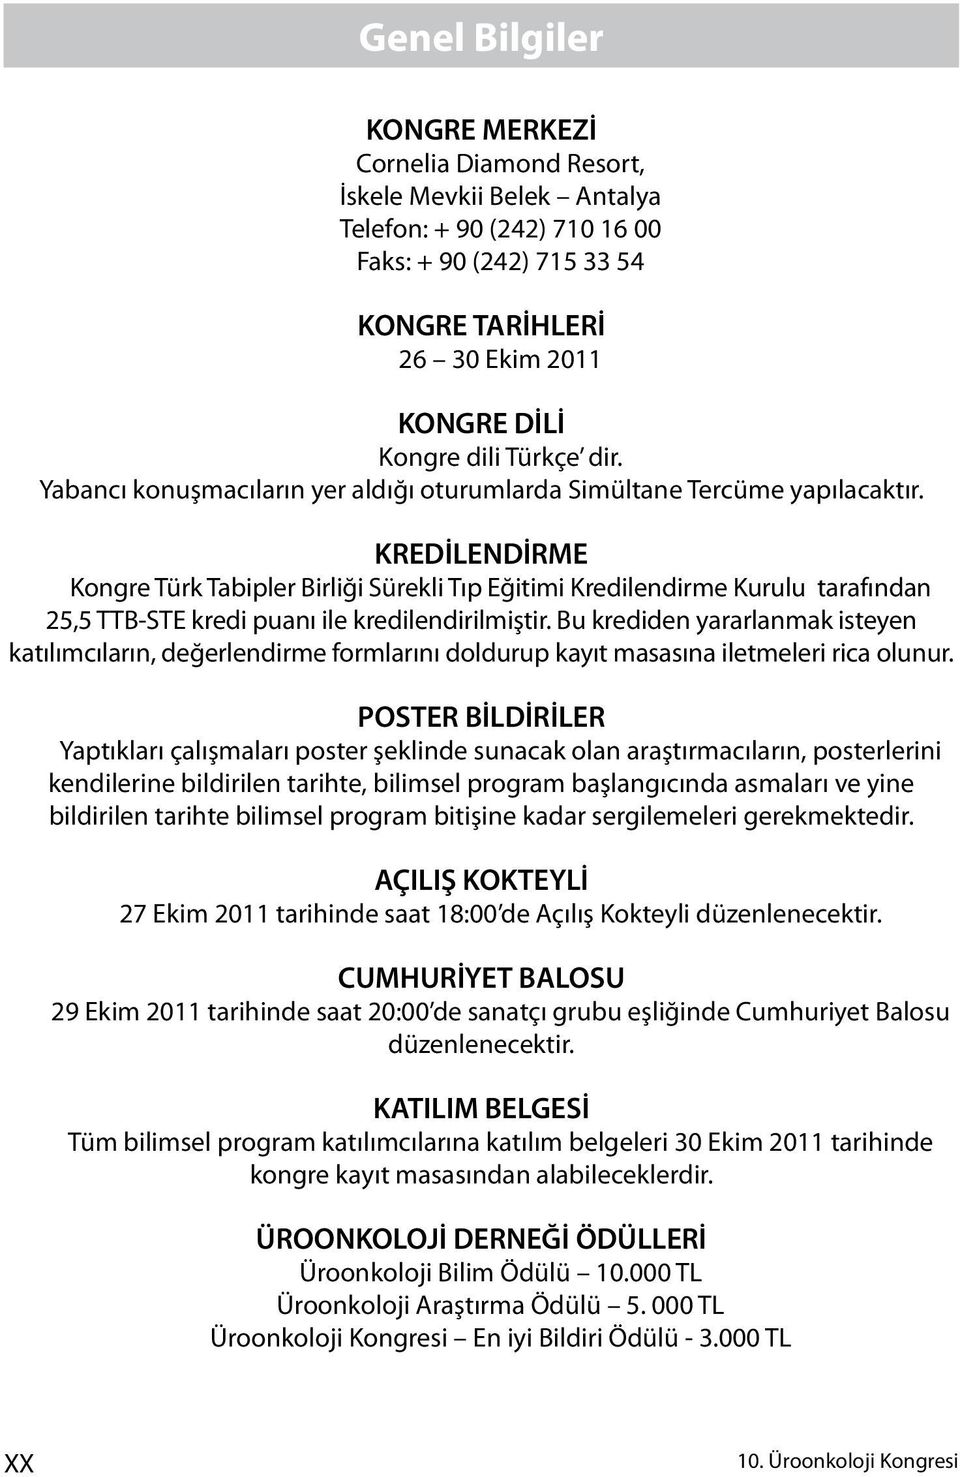 KREDİLENDİRME Kongre Türk Tabipler Birliği Sürekli Tıp Eğitimi Kredilendirme Kurulu tarafından 25,5 TTB-STE kredi puanı ile kredilendirilmiştir.